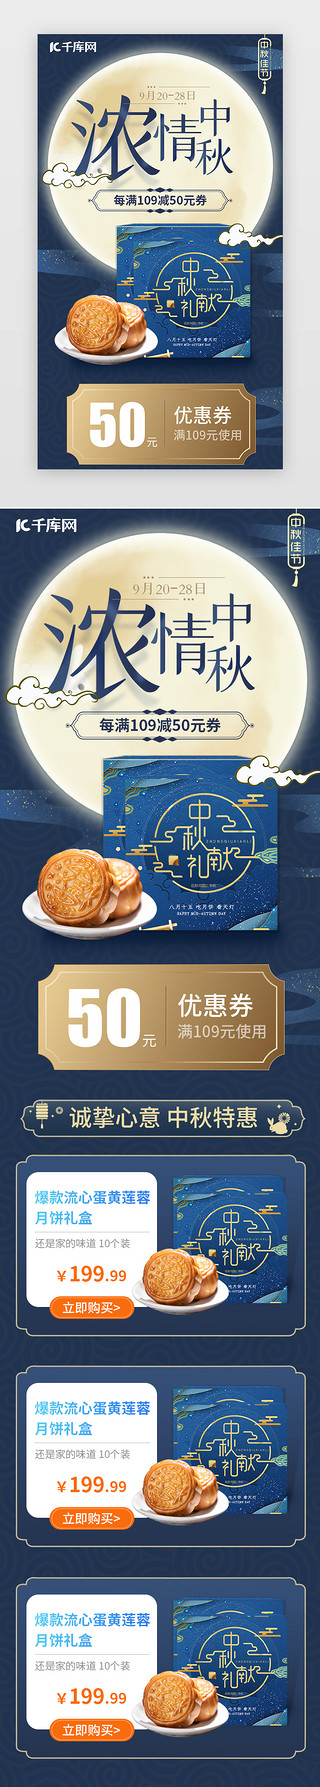 中秋月饼h5UI设计素材_蓝简创意中秋佳节电商促销活动H5长图